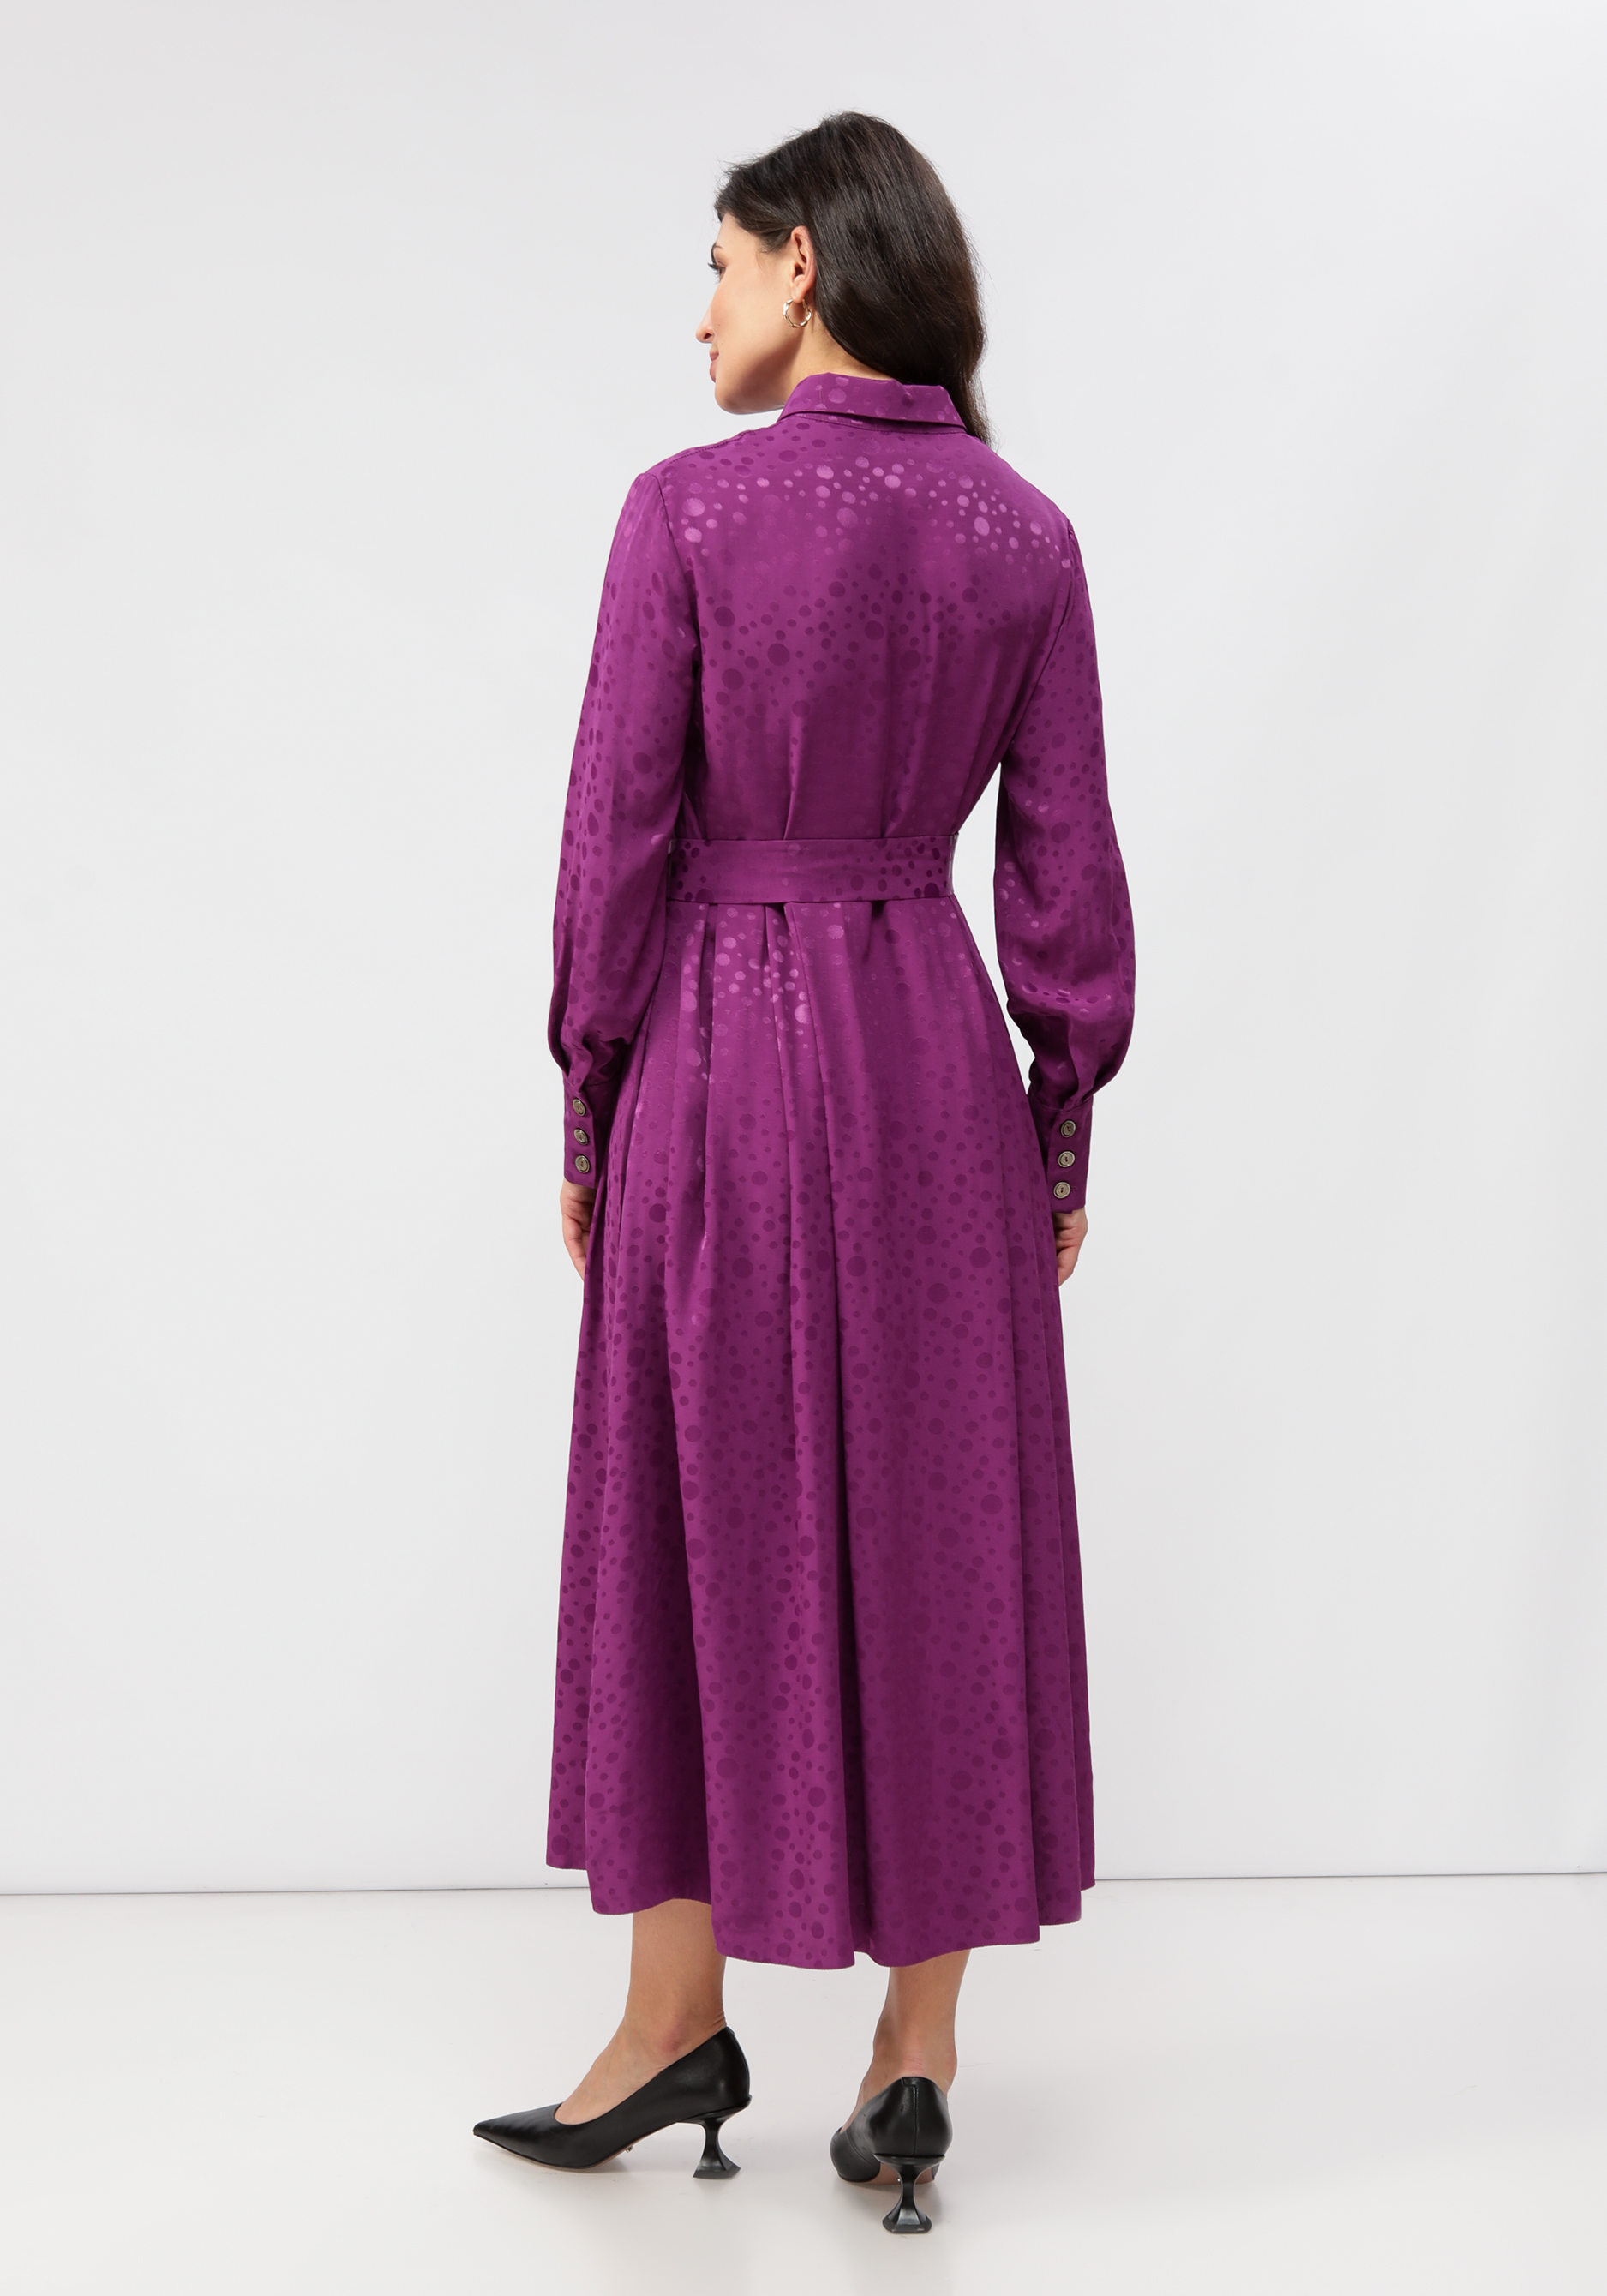 Платье на пуговицах со складками на юбке Vivienne Mare, цвет фиолетовый, размер 50 - фото 2